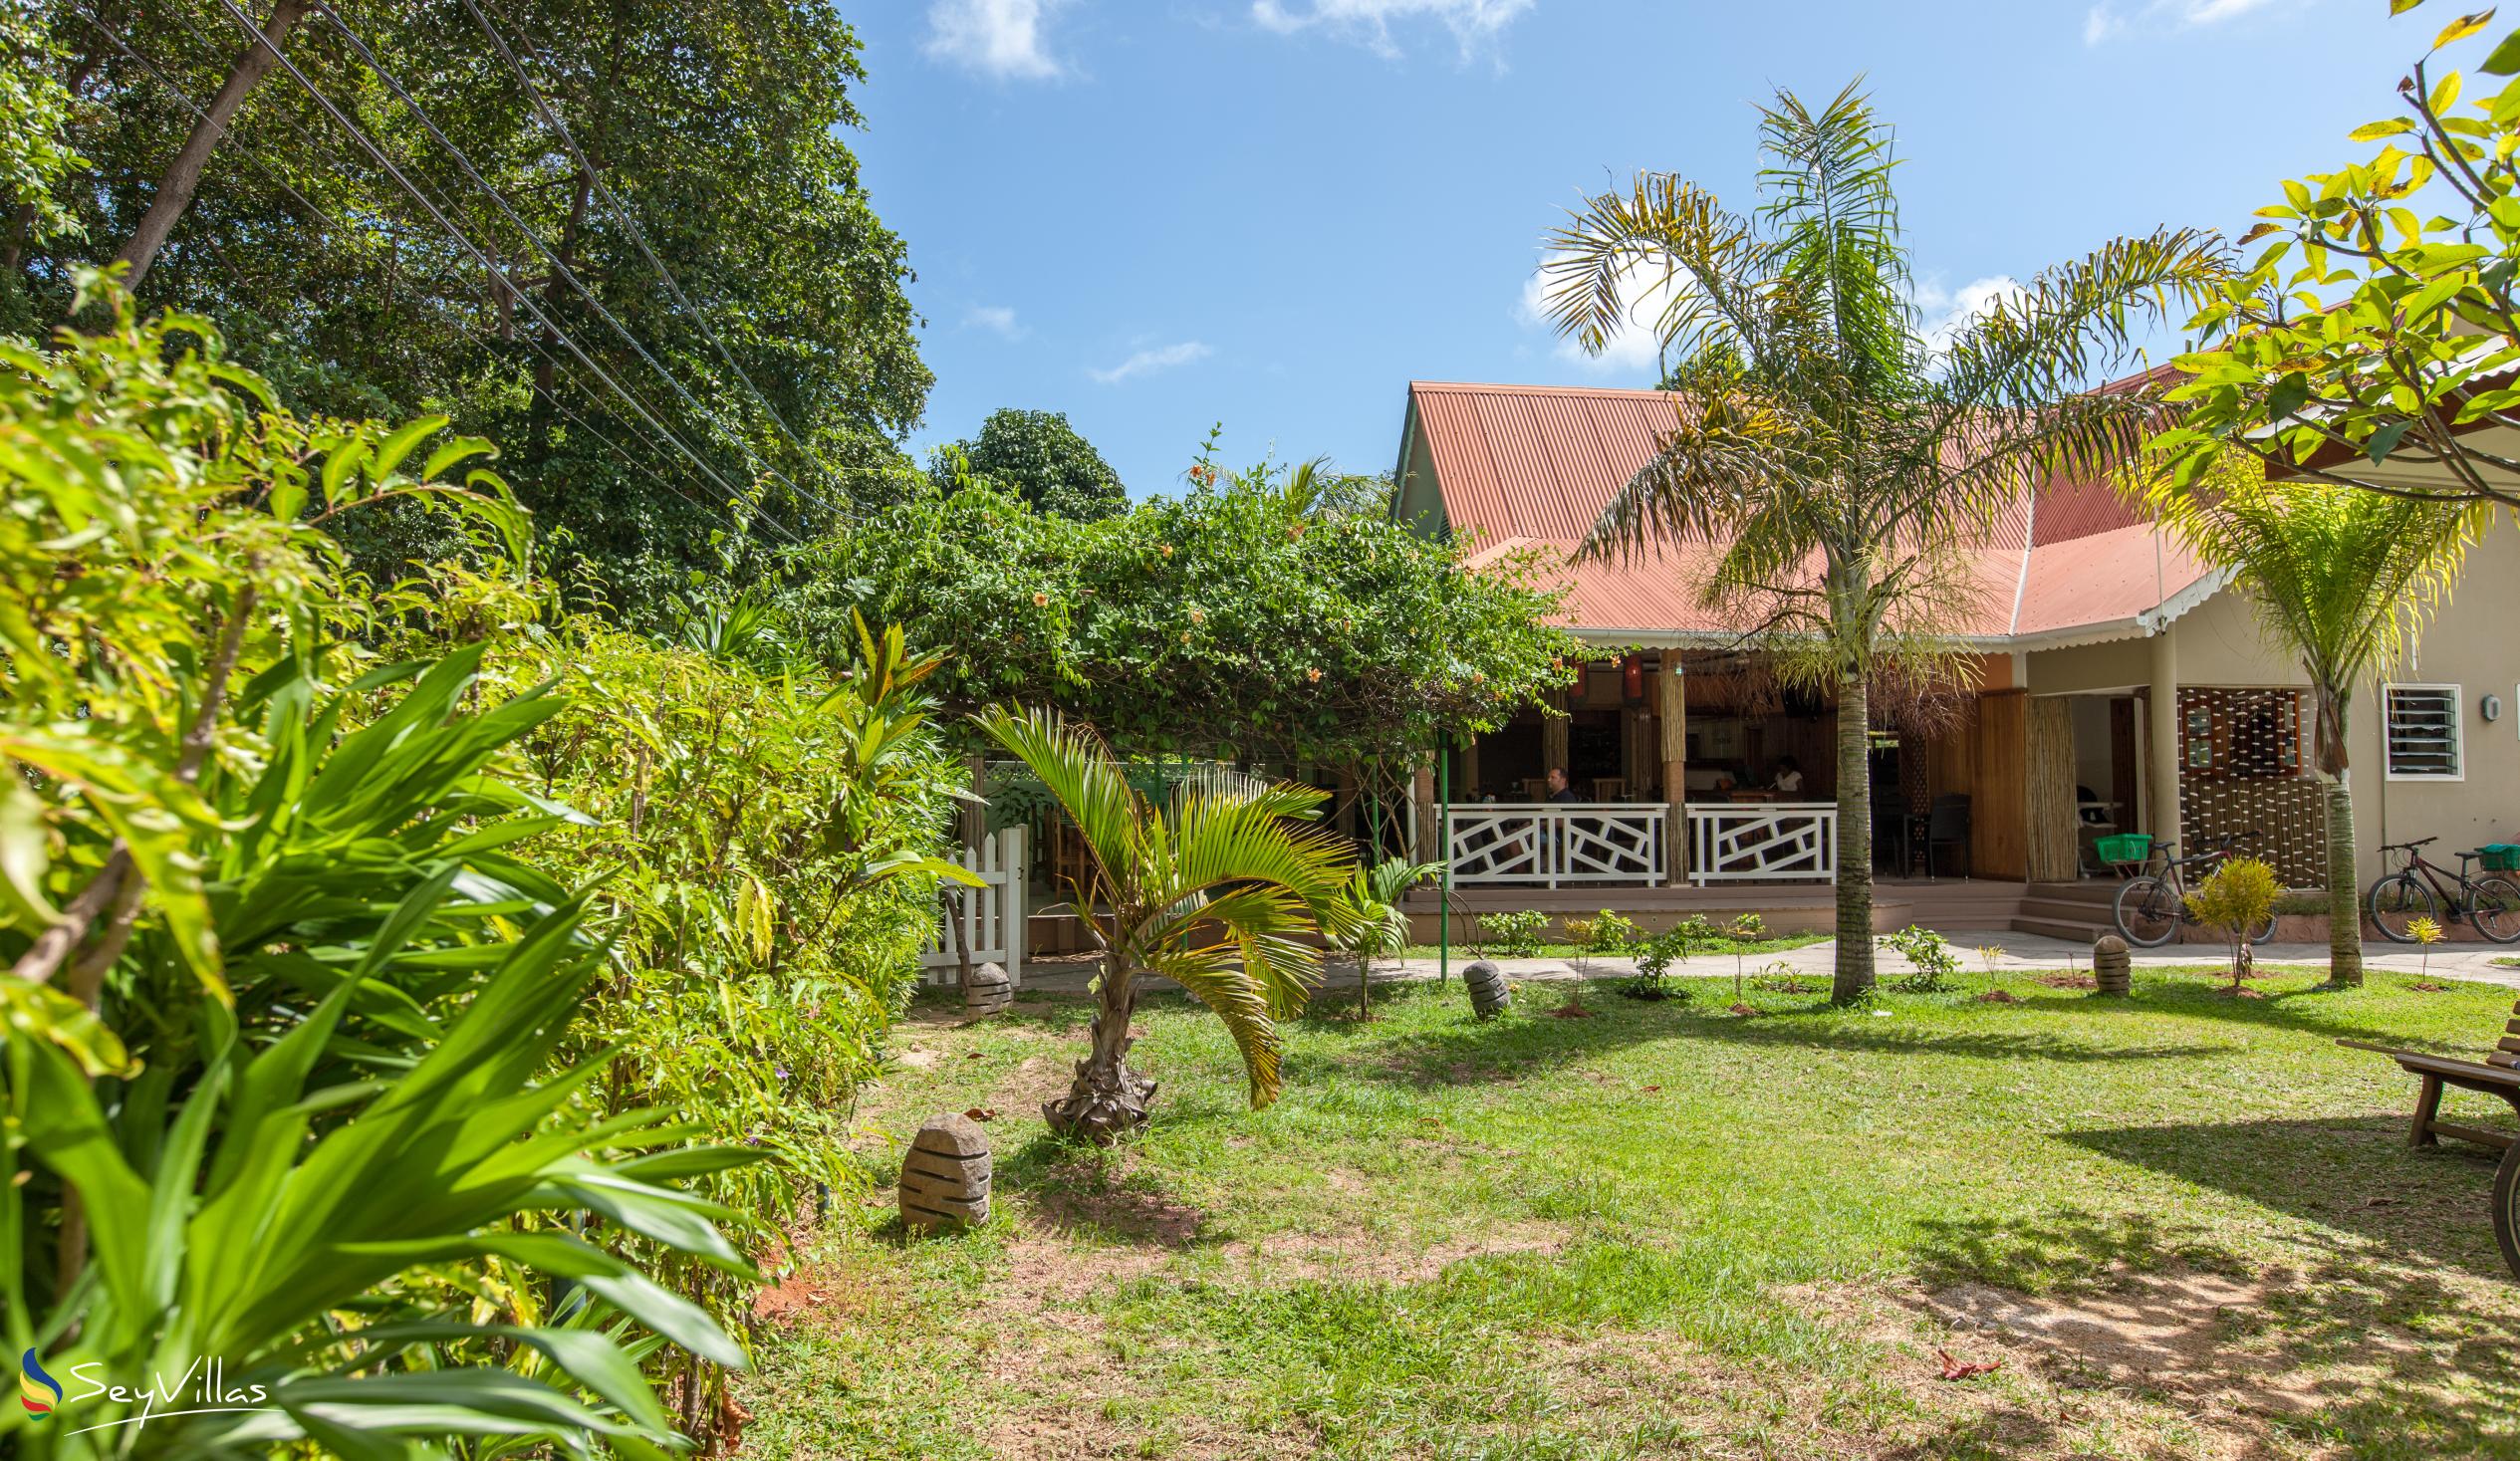 Foto 3: Villa Authentique - Aussenbereich - La Digue (Seychellen)